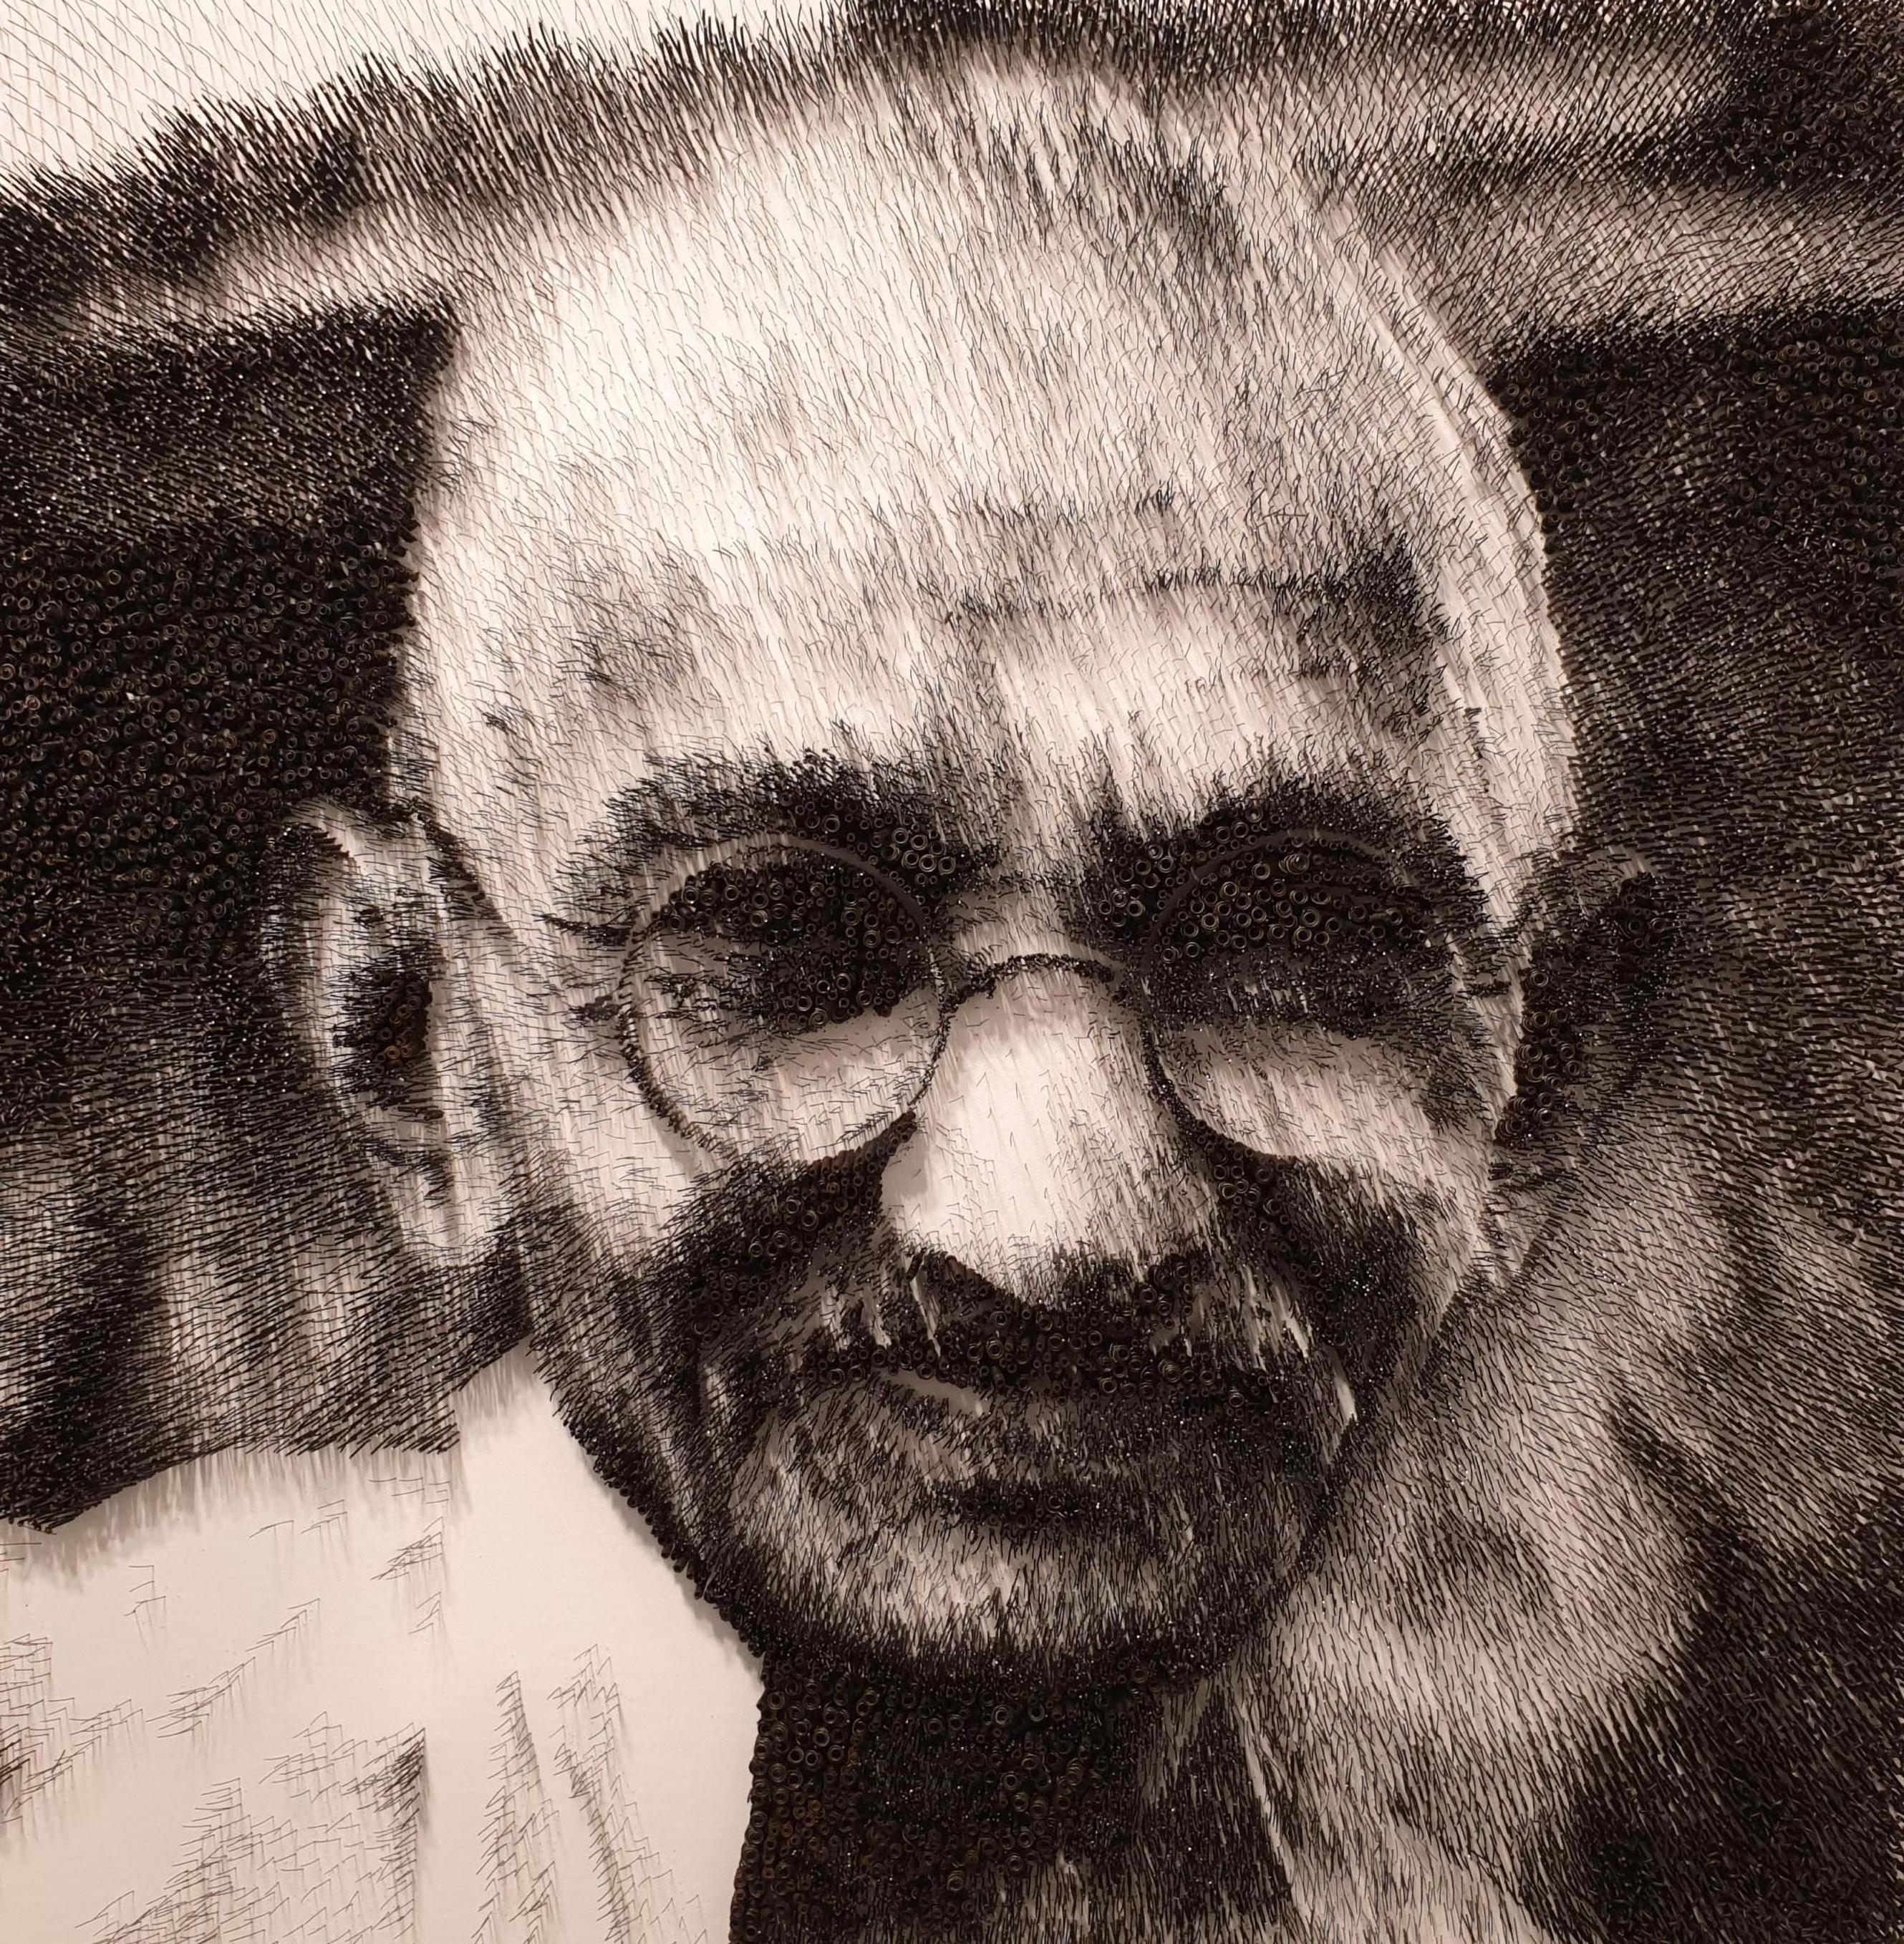 Mohandas Gandhi[Noir et blanc, acier sur toile, stéréoscopique, portrait, nouveaux médias]